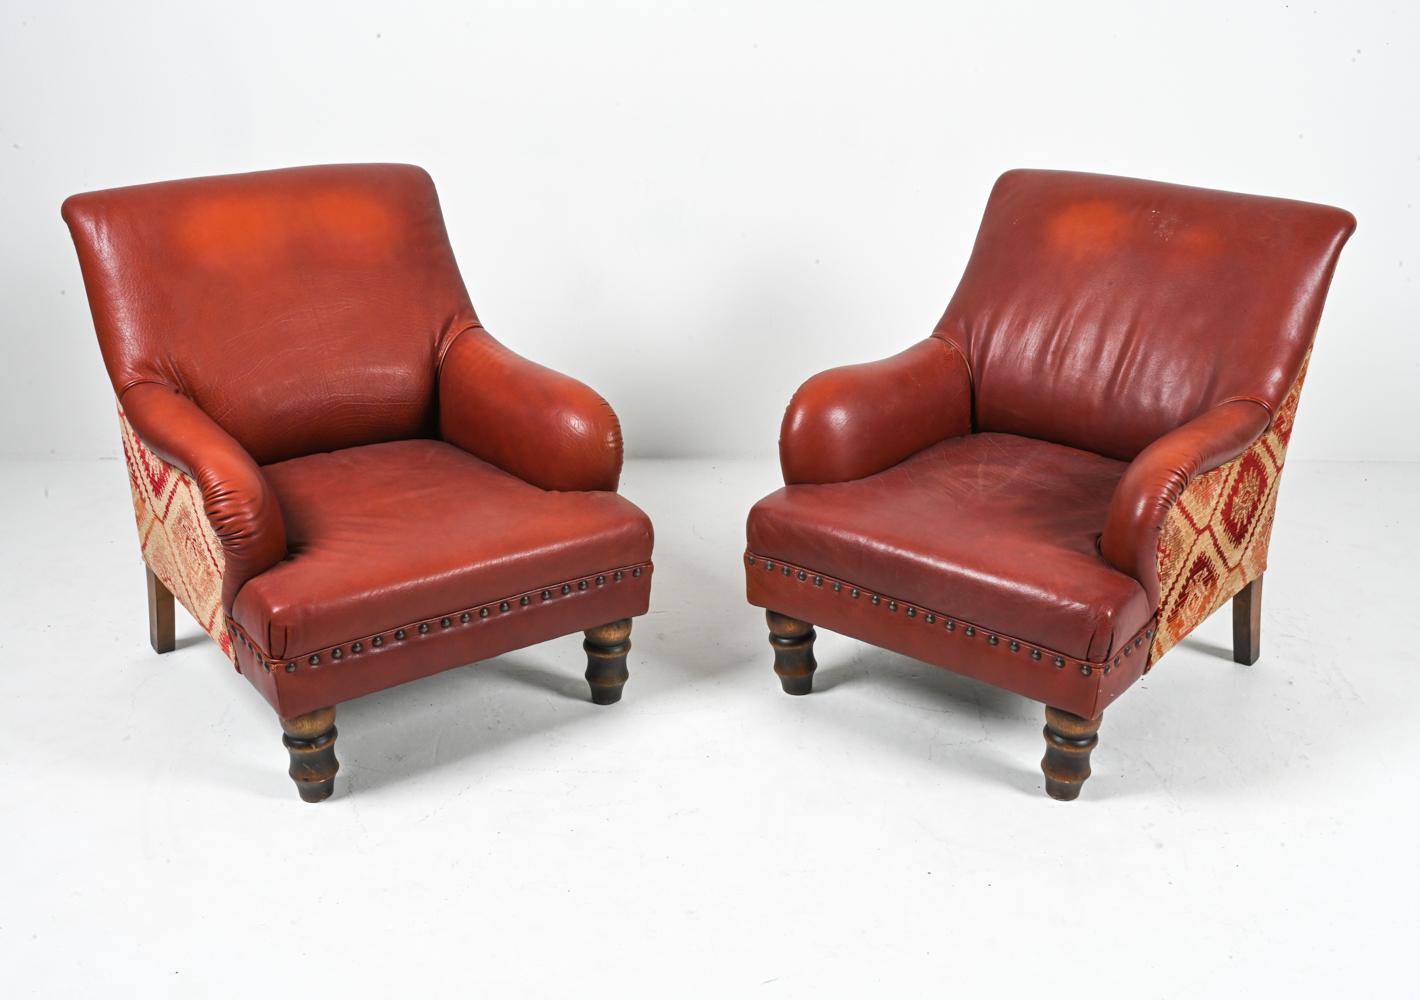 Cette splendide paire de chaises de salon Roche Bobois est l'incarnation même du luxe vintage. Elle témoigne d'un savoir-faire inégalé et d'un design intemporel. Drapées dans un rouge brique profond, ces chaises mettent en valeur la beauté robuste